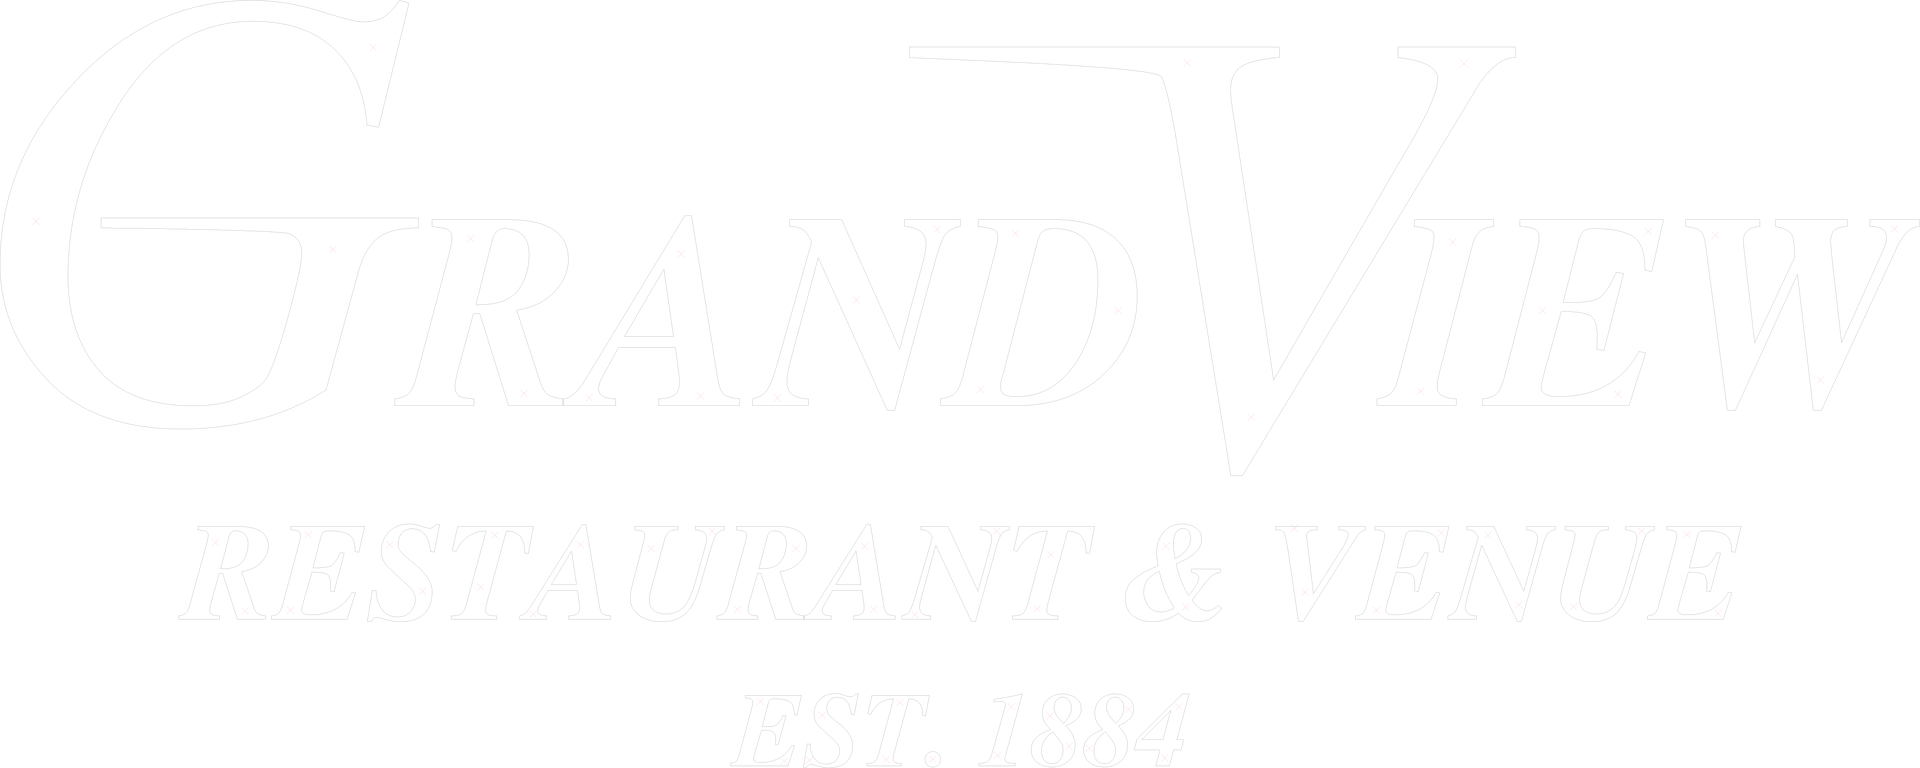 Grand View Logo